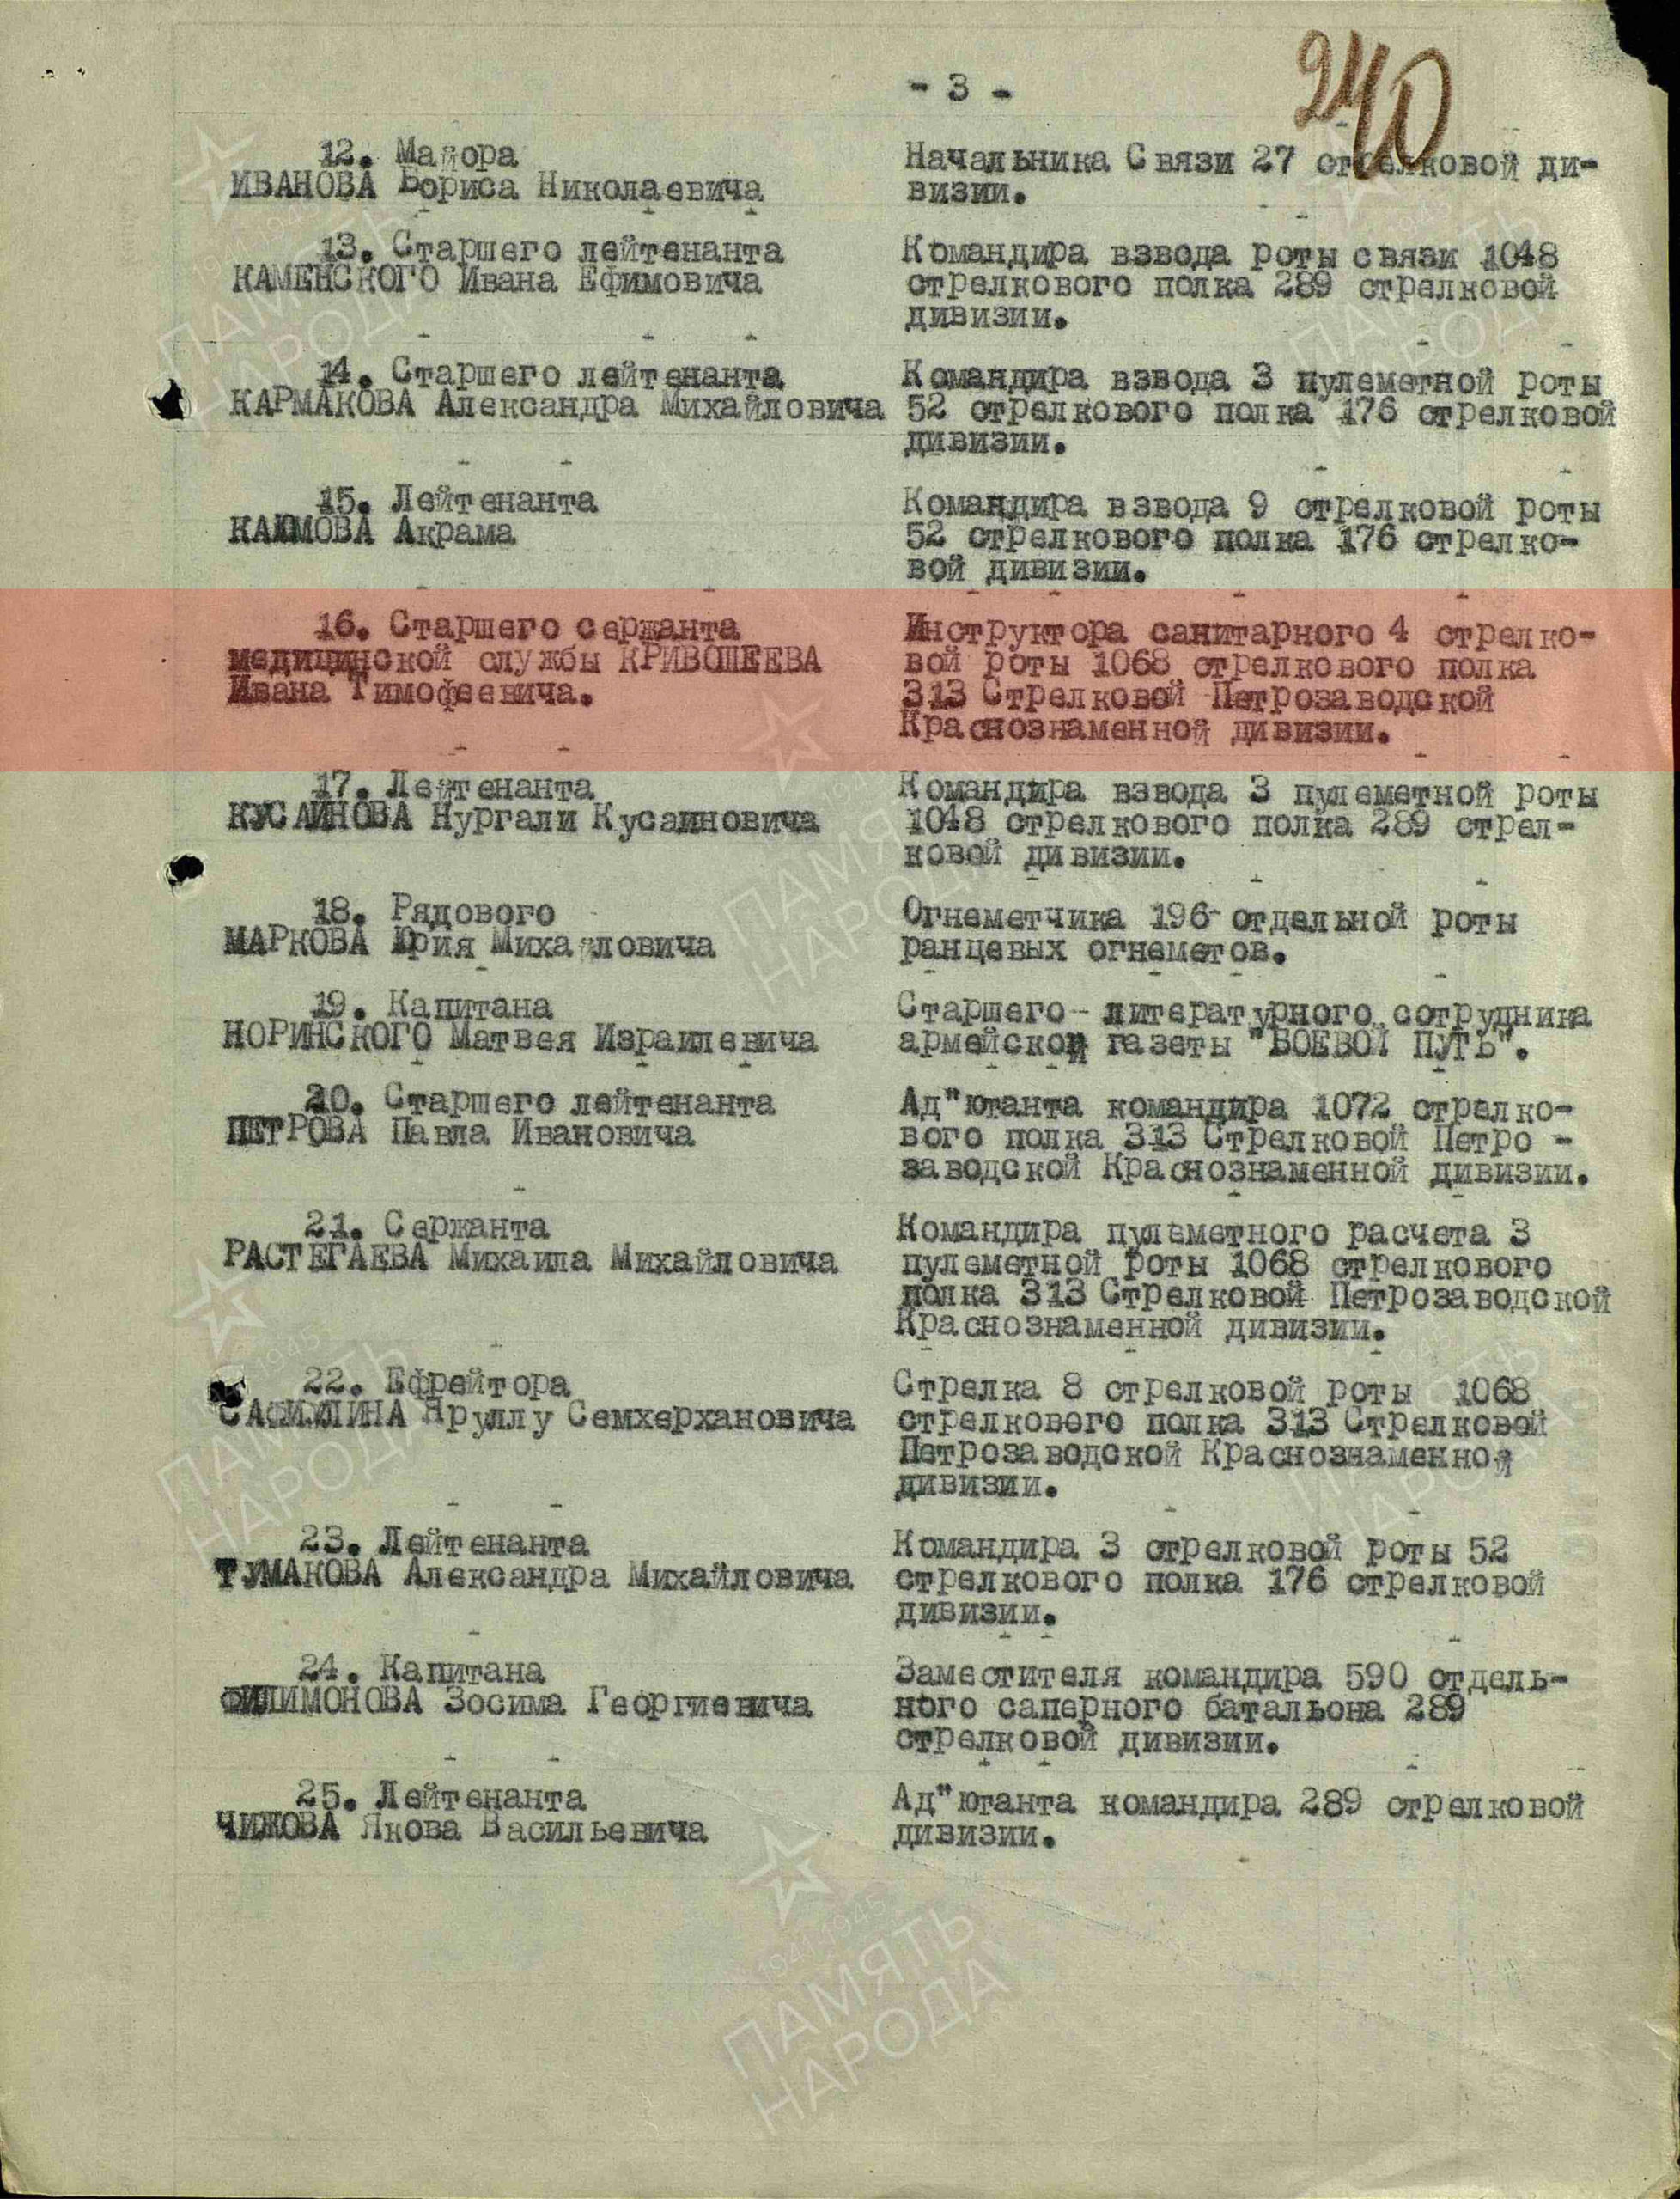 2. Лист приказа о награждении (строка в наградном списке). Орден Отечественной войны II степени